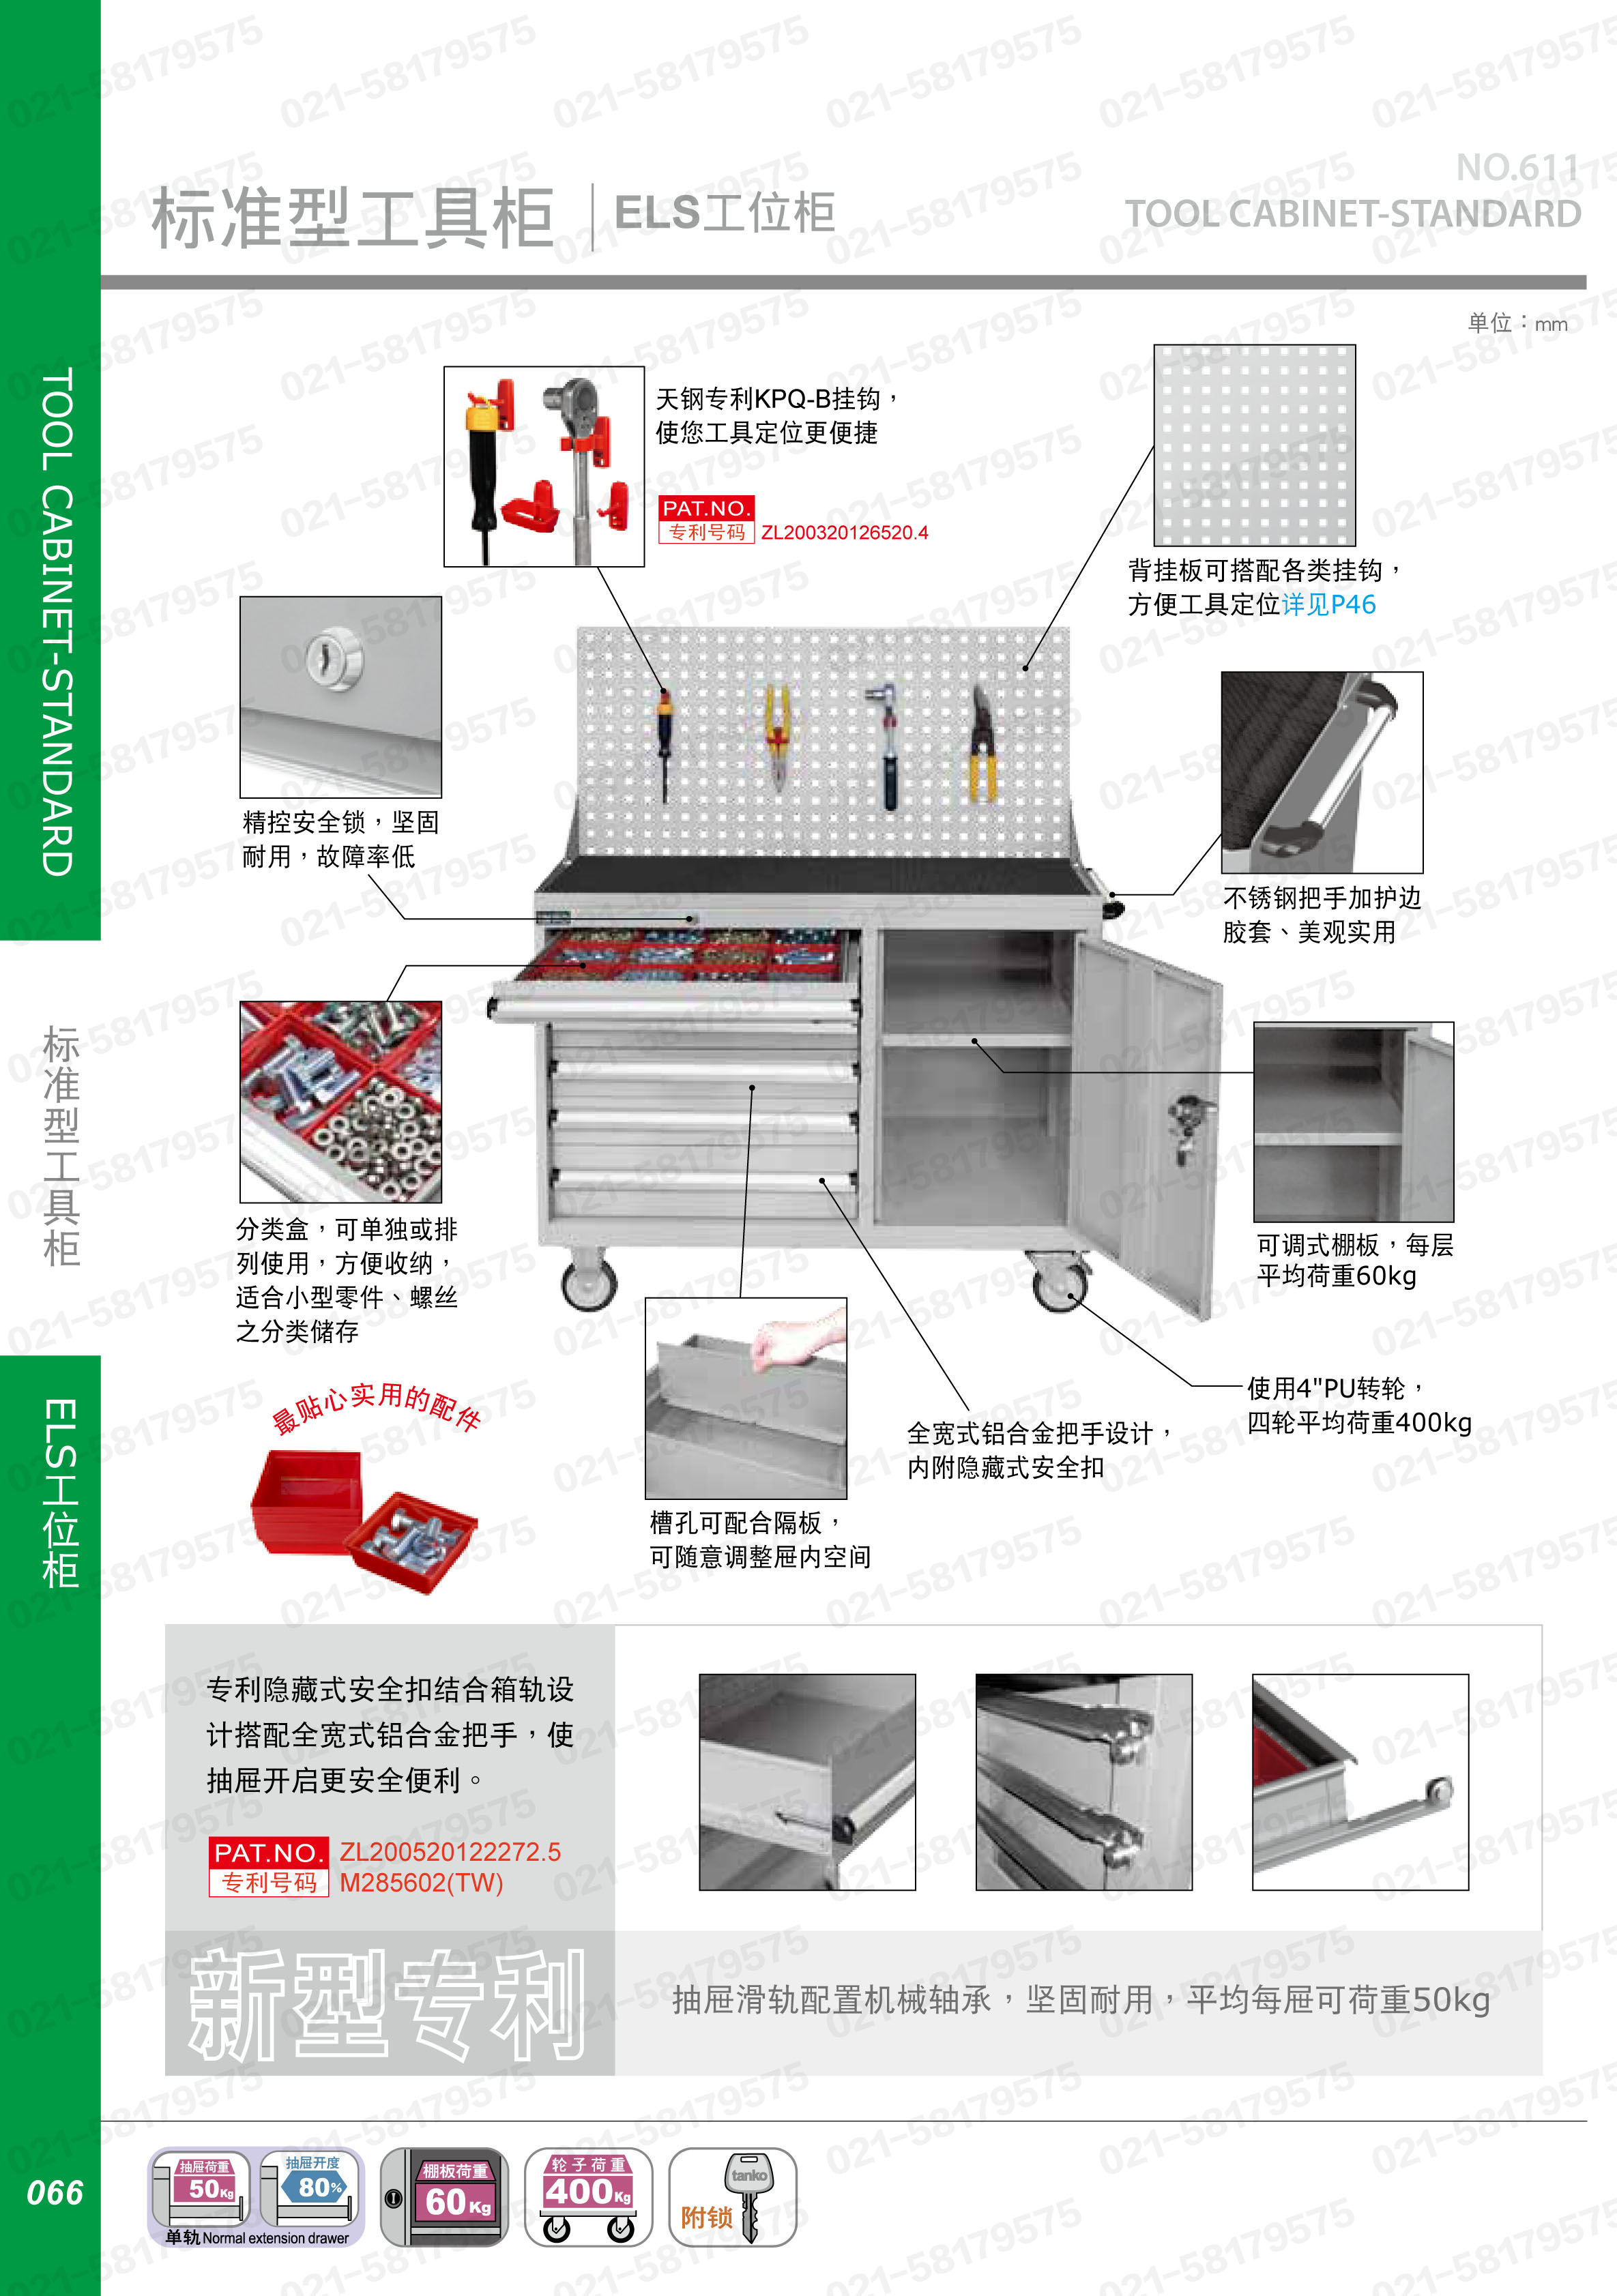 标准型门抽组合工具柜带挂板,ELS-276A,4F0632